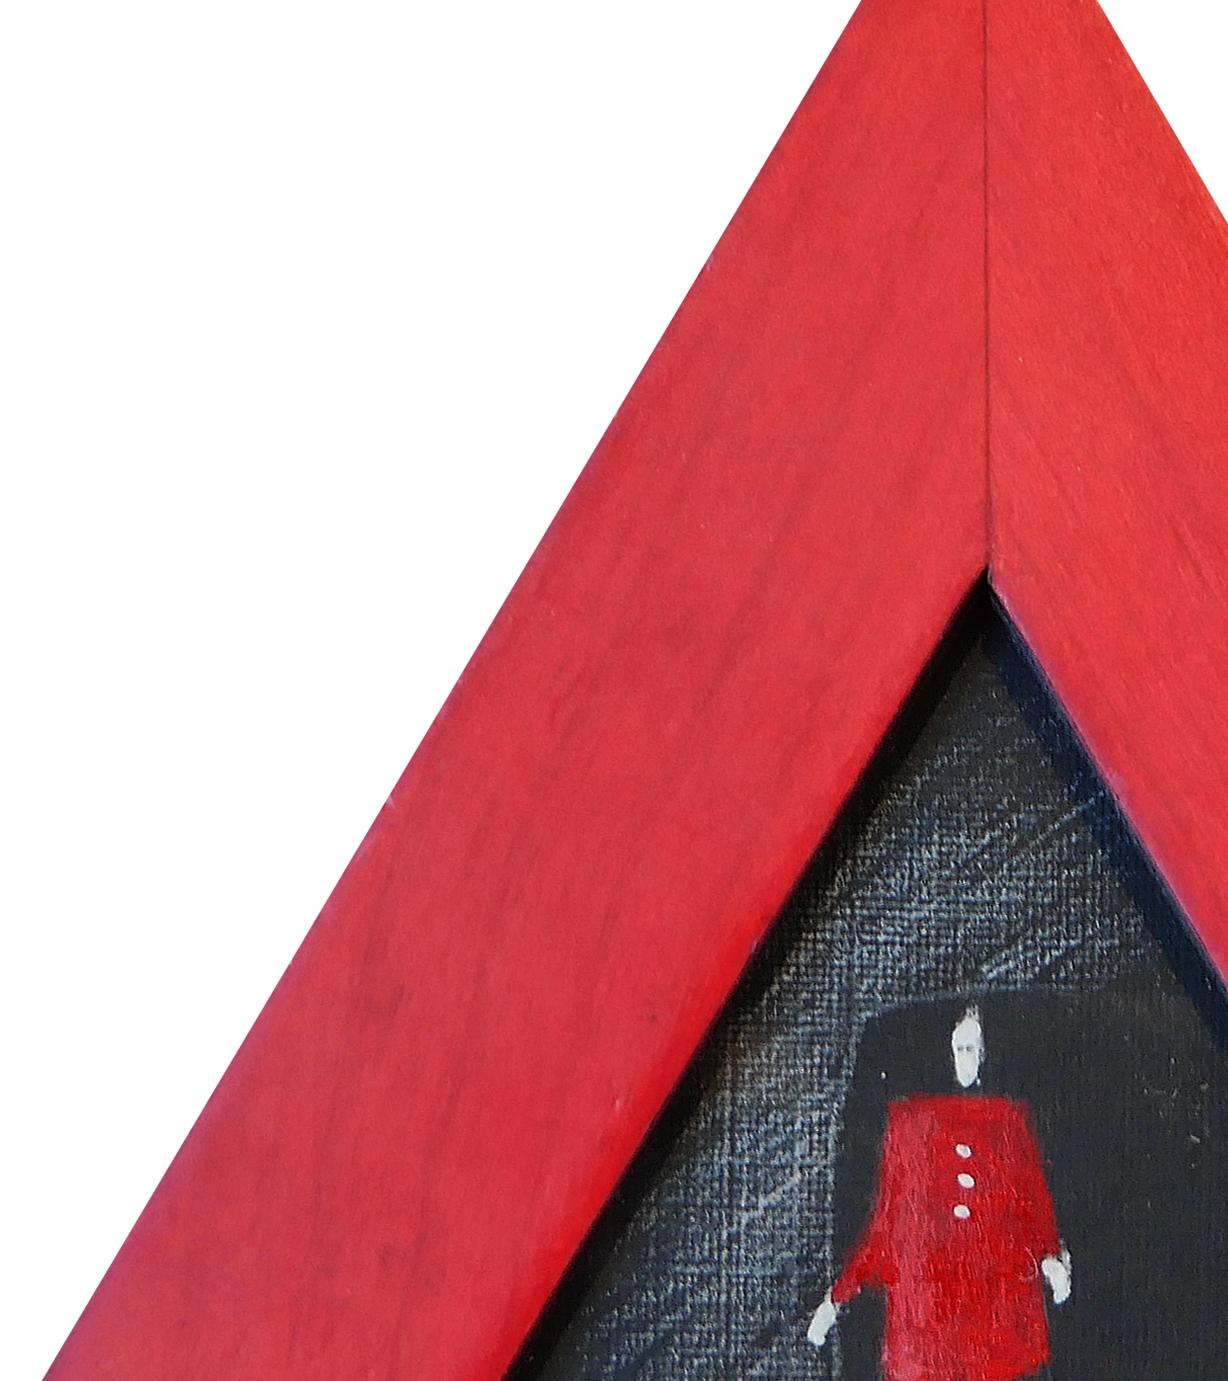 Petite peinture figurative abstraite rouge et noire « Red Dress » dans un cadre triangulaire - Contemporain Painting par Scott Woodard